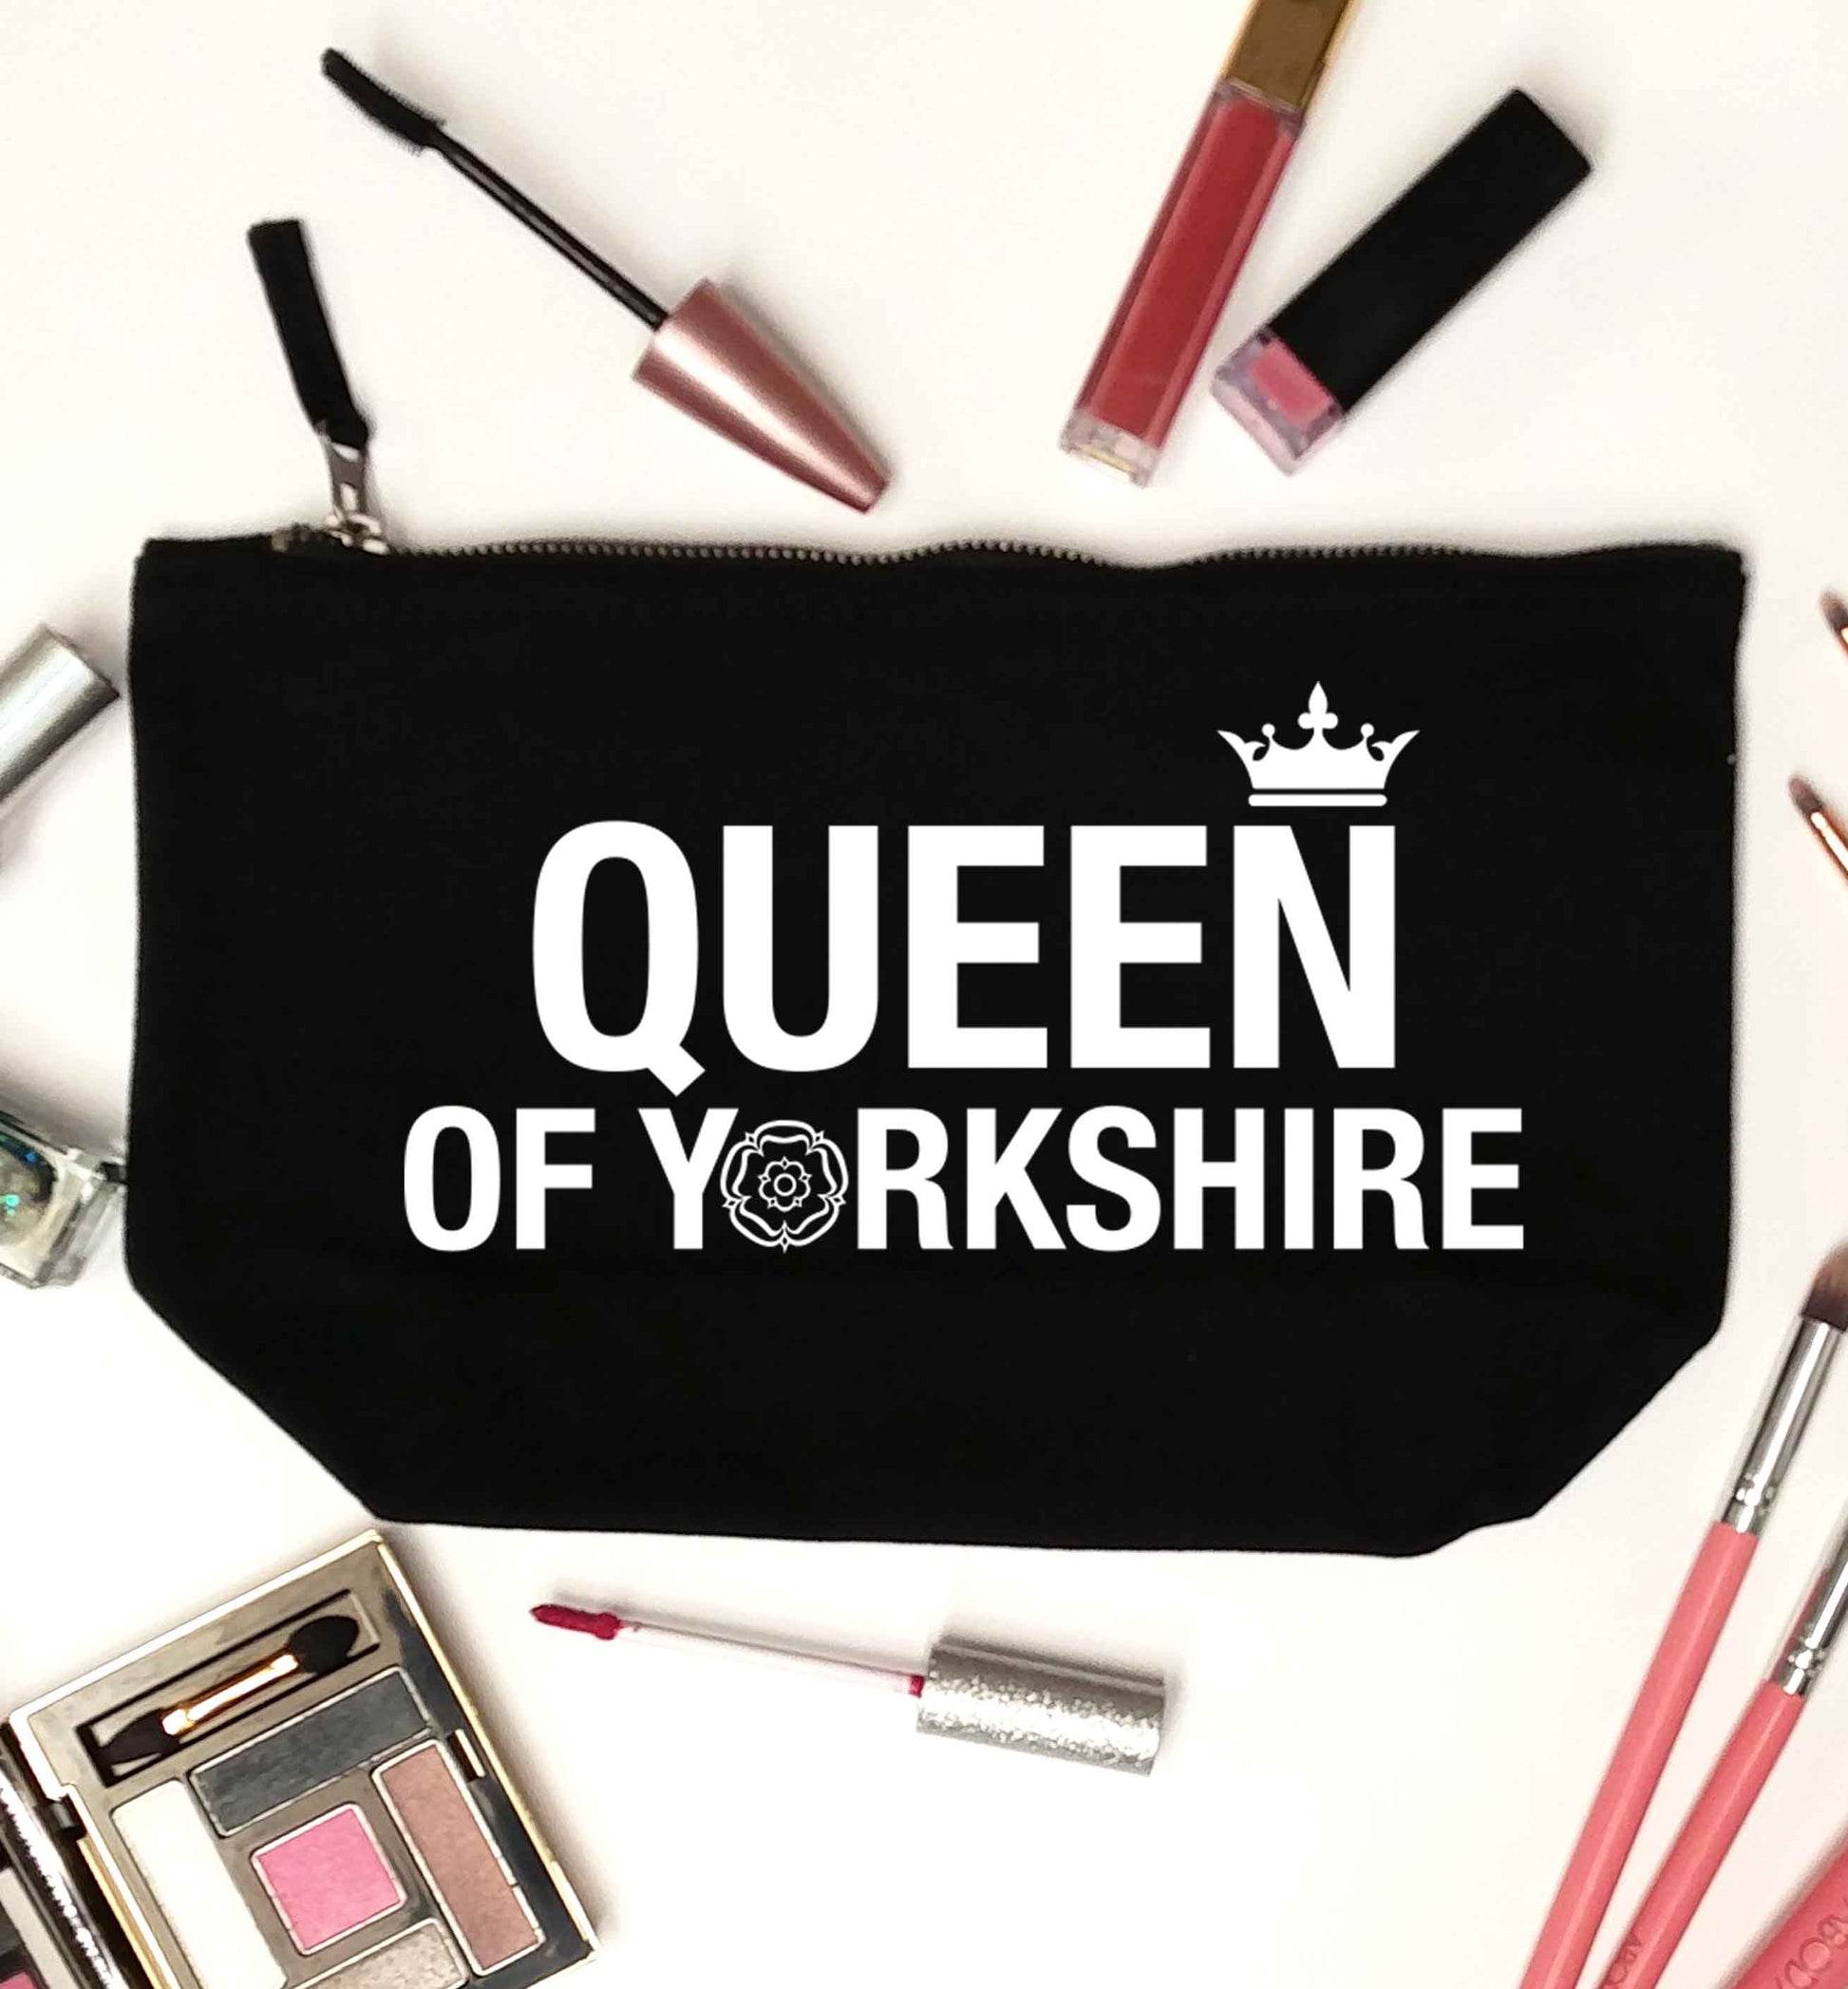 Queen of Yorkshire black makeup bag